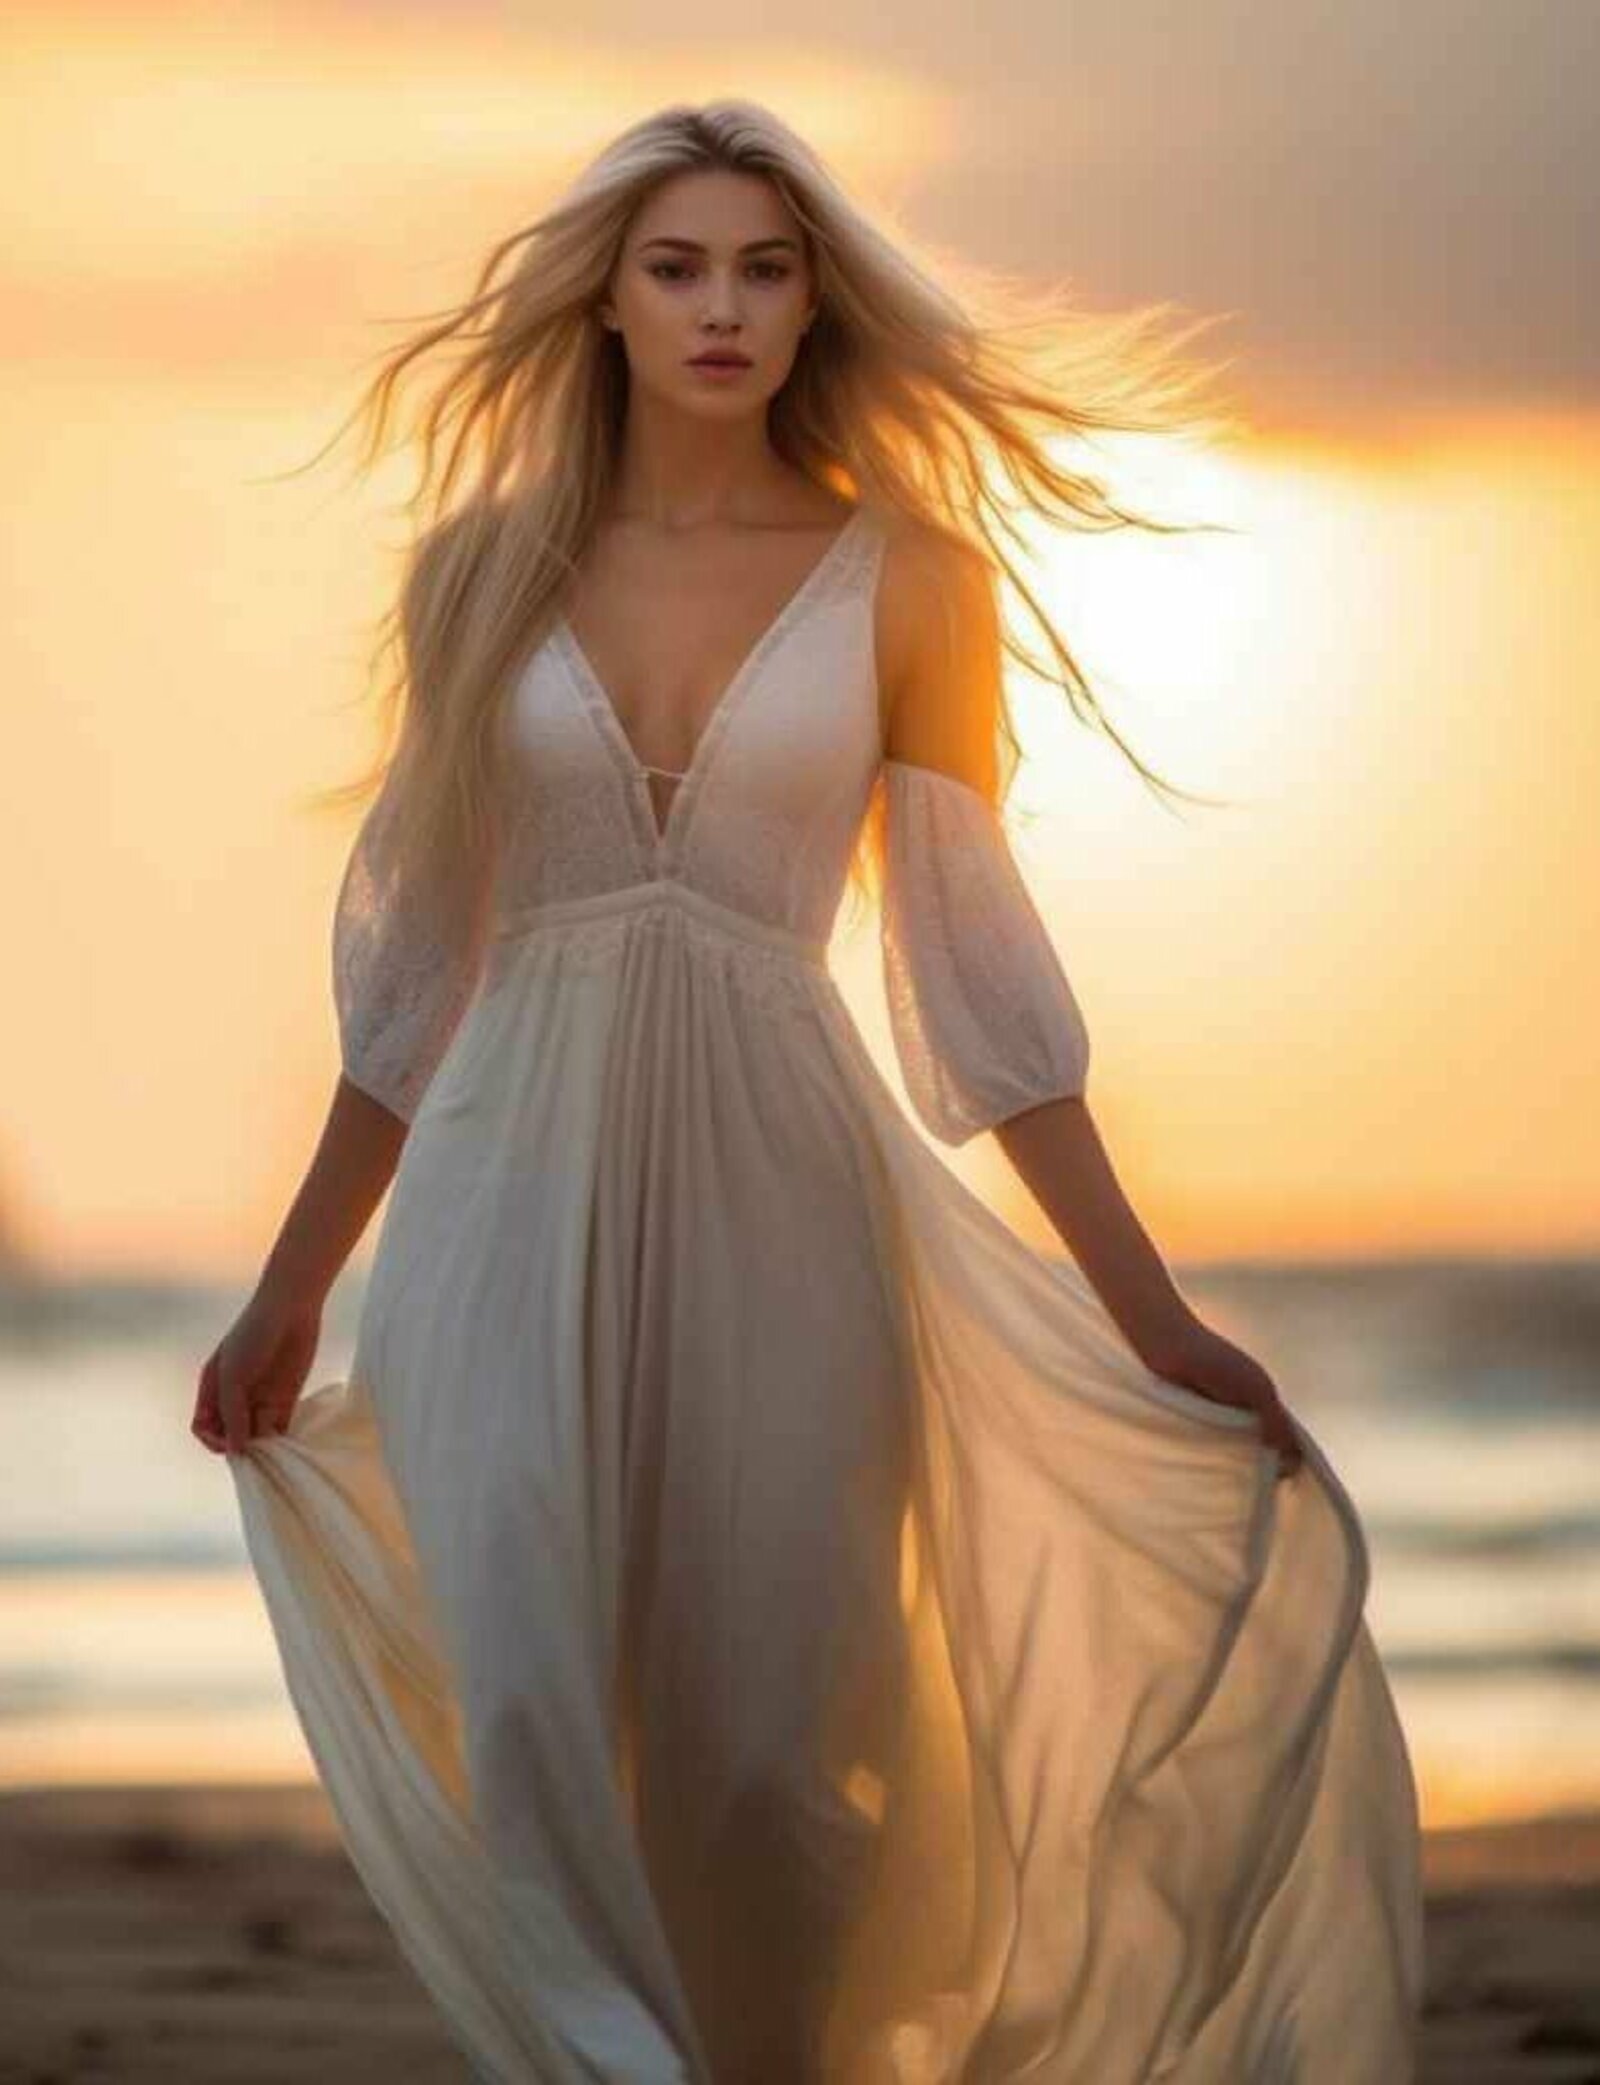 Eine junge Frau in wallendem weißen Kleid am Strand